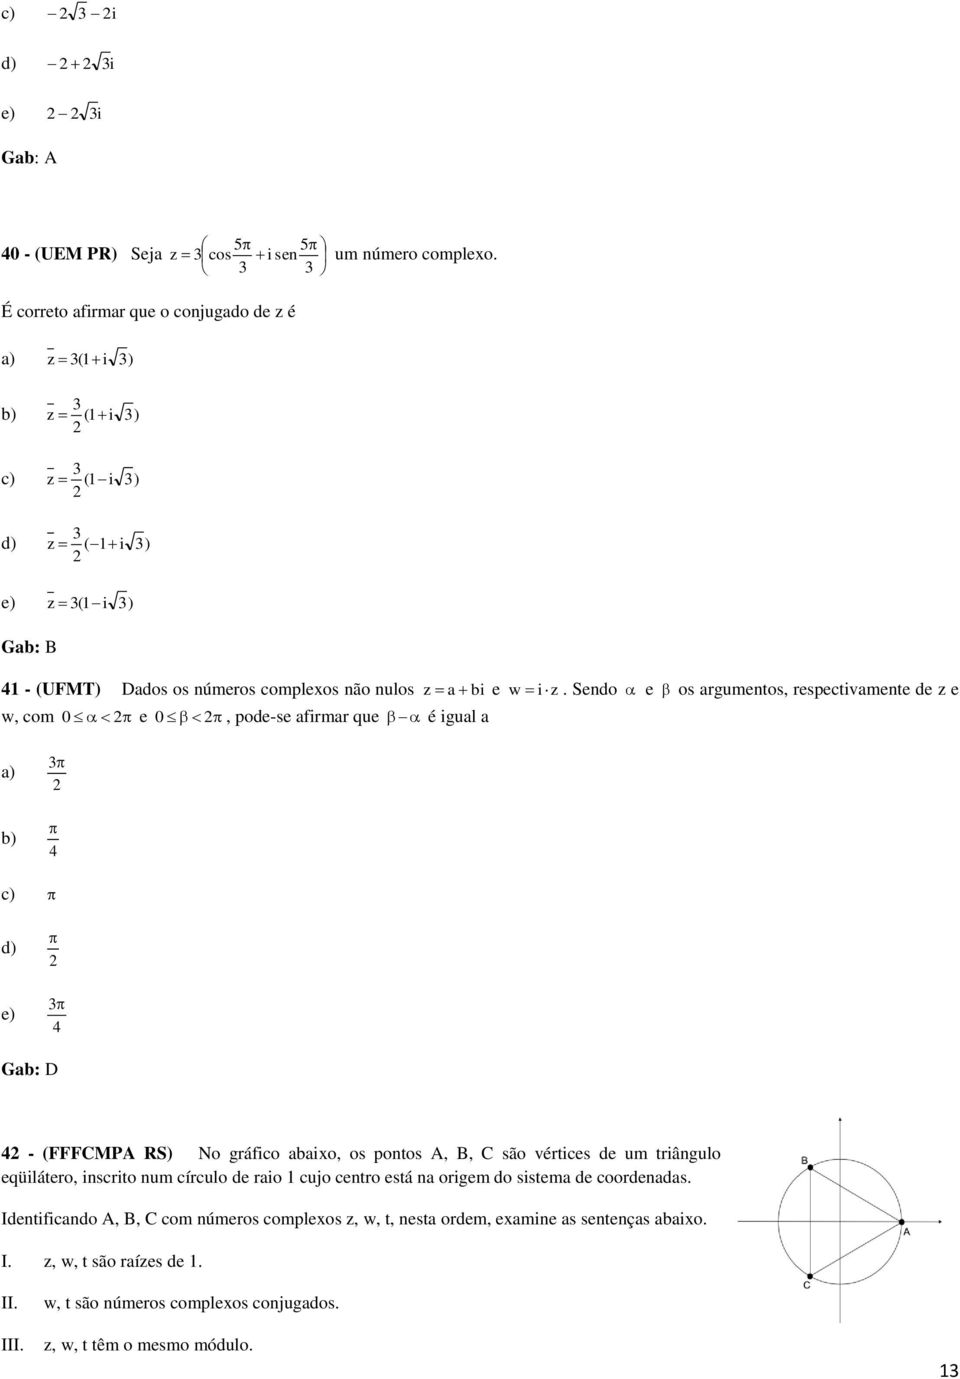 Sendo w, com 0 e 0, pode-se afirmar que é igual a e os argumentos, respectivamente de z e e) 4 4 Gab: D 4 - (FFFCMPA RS) No gráfico abaixo, os pontos A, B, C são vértices de um